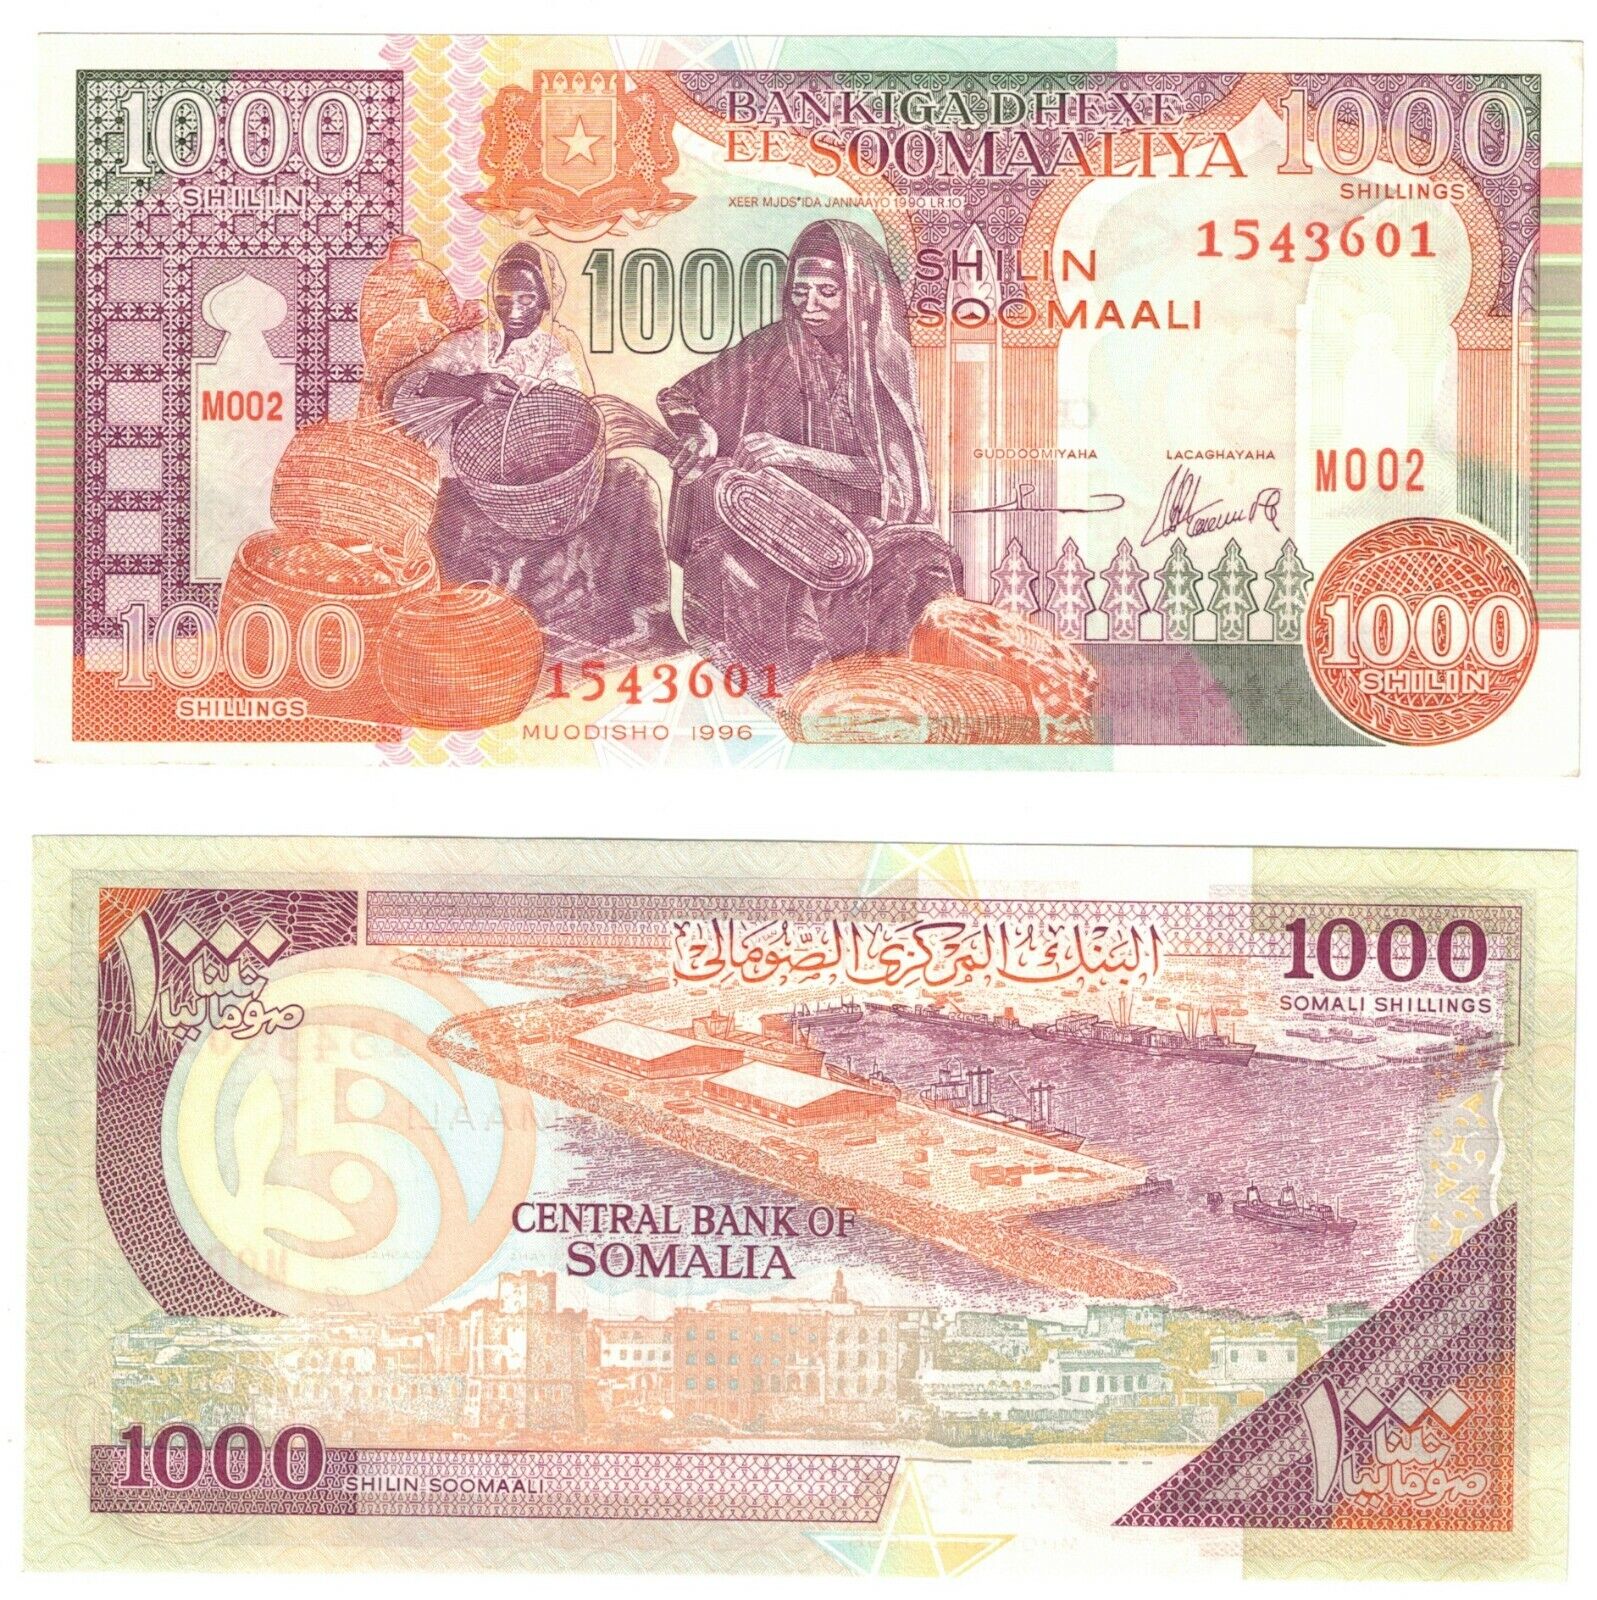 1996 Somalia Banknote 1000 Shilin P37 (bm2) Unc Prefix M002